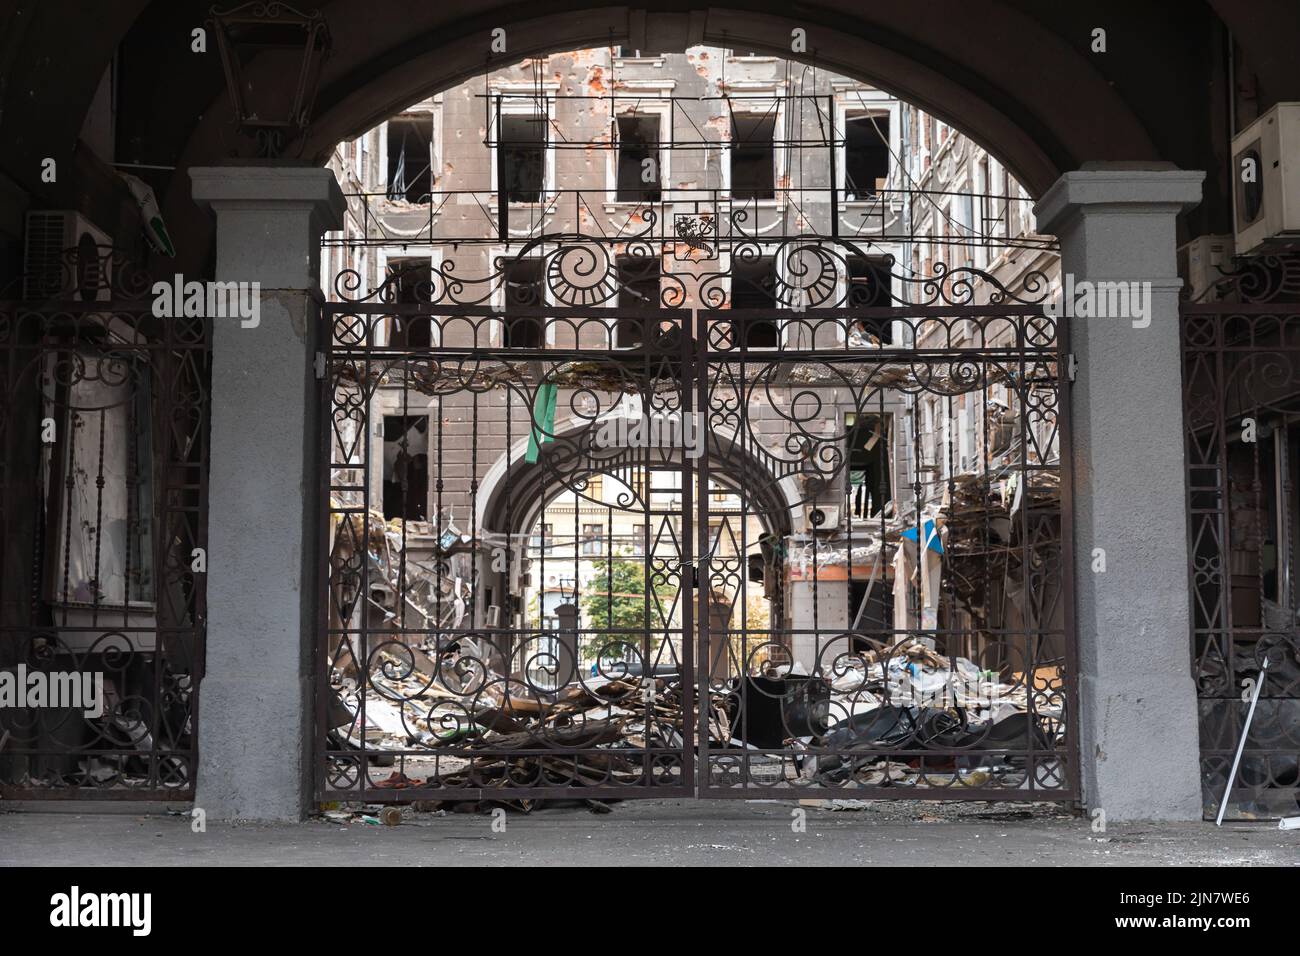 Una valla decorativa de hierro forjado en el patio del edificio dañado. Edificio destruido en el centro histórico en Kharkiv, Ucrania - 1 Ago 2022 Foto de stock